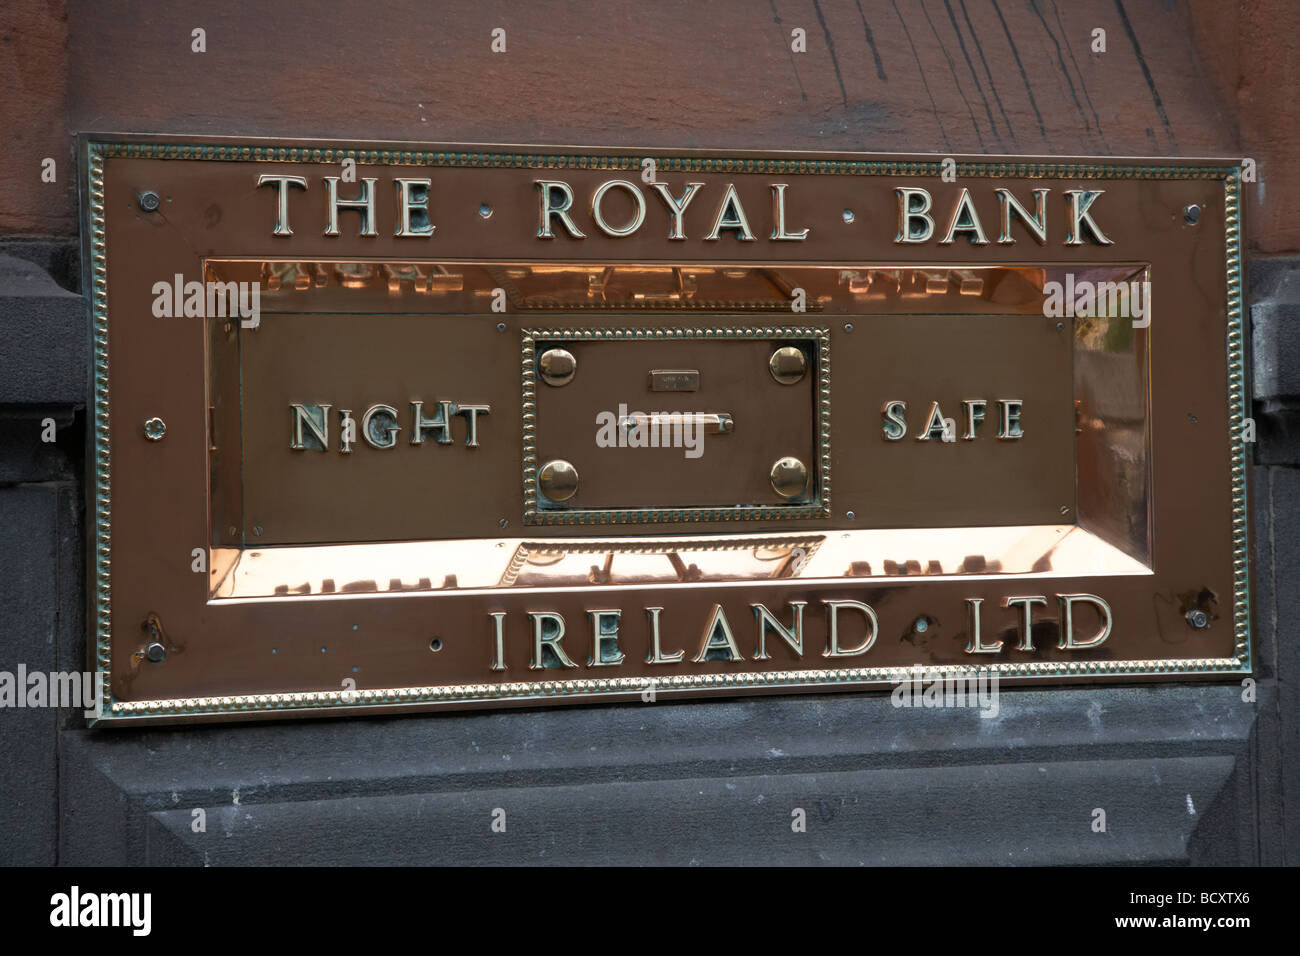 Cuivre poli plaque de nuit de la Banque Royale Banque Ireland Ltd dans un pub maintenant Dame Street Dublin République d'Irlande Banque D'Images